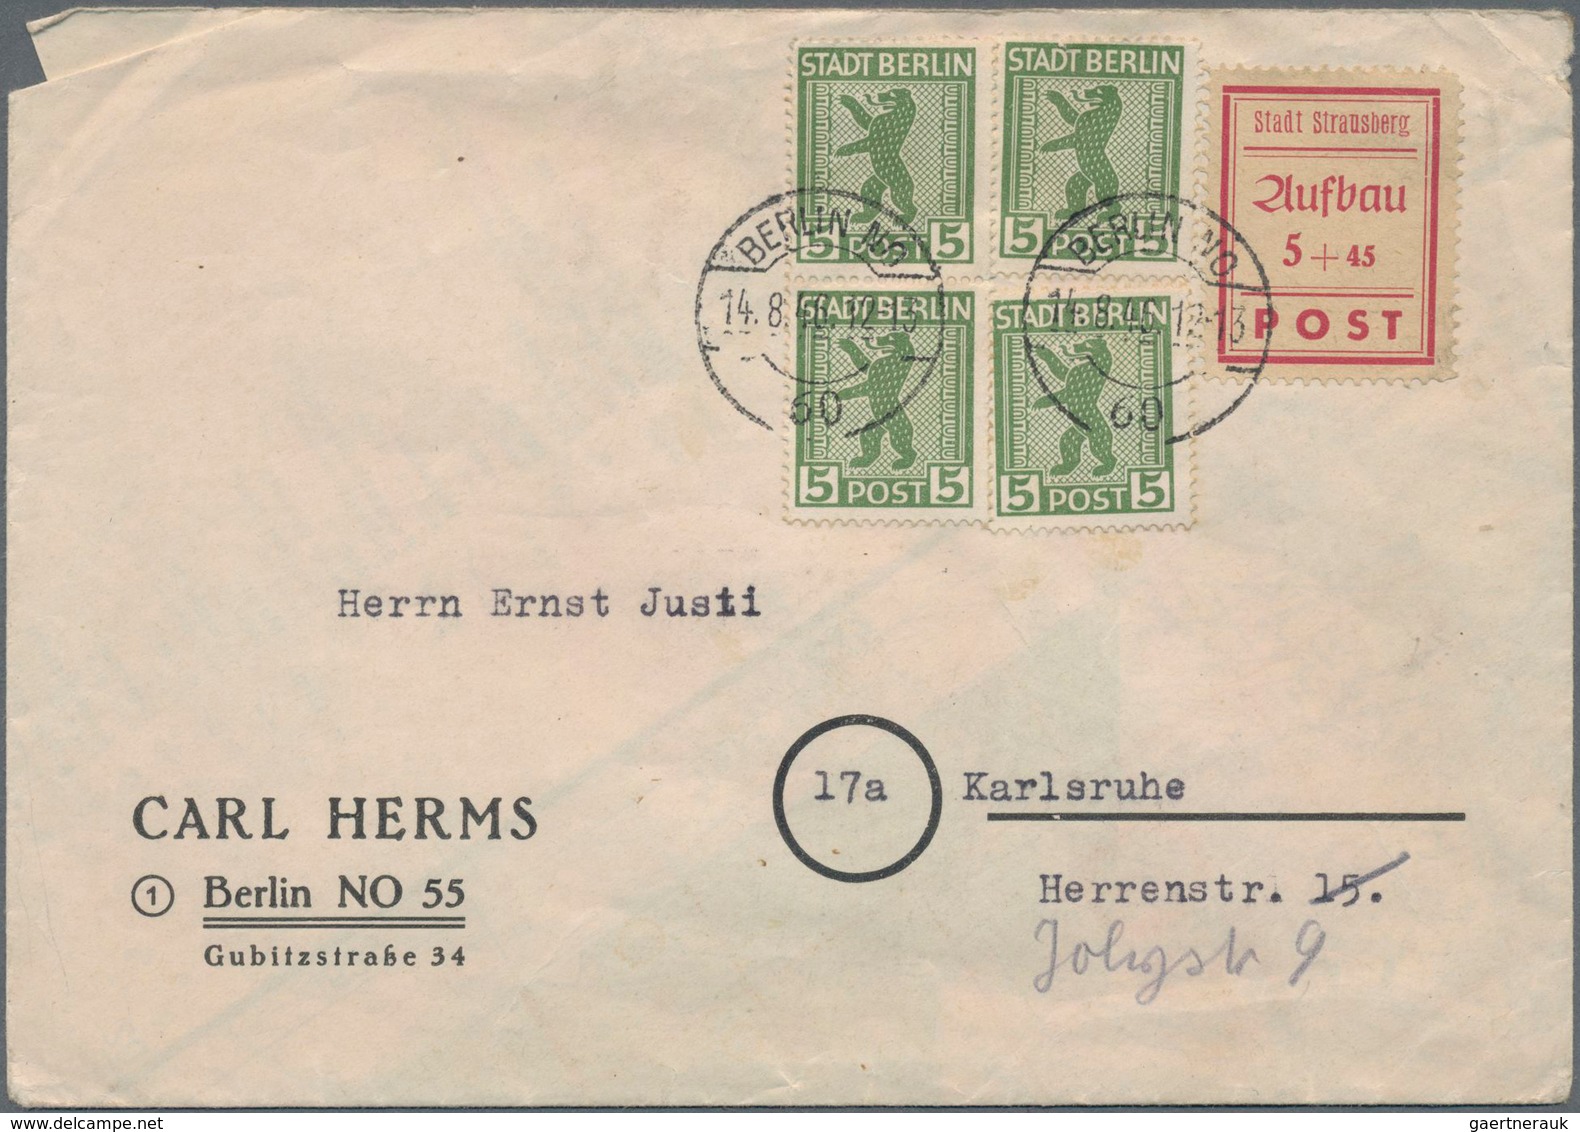 Deutschland: 1870-1980, vielseitiger Posten mit über 3.000 Briefen, Belegen, Ganzsachen und Ansichts